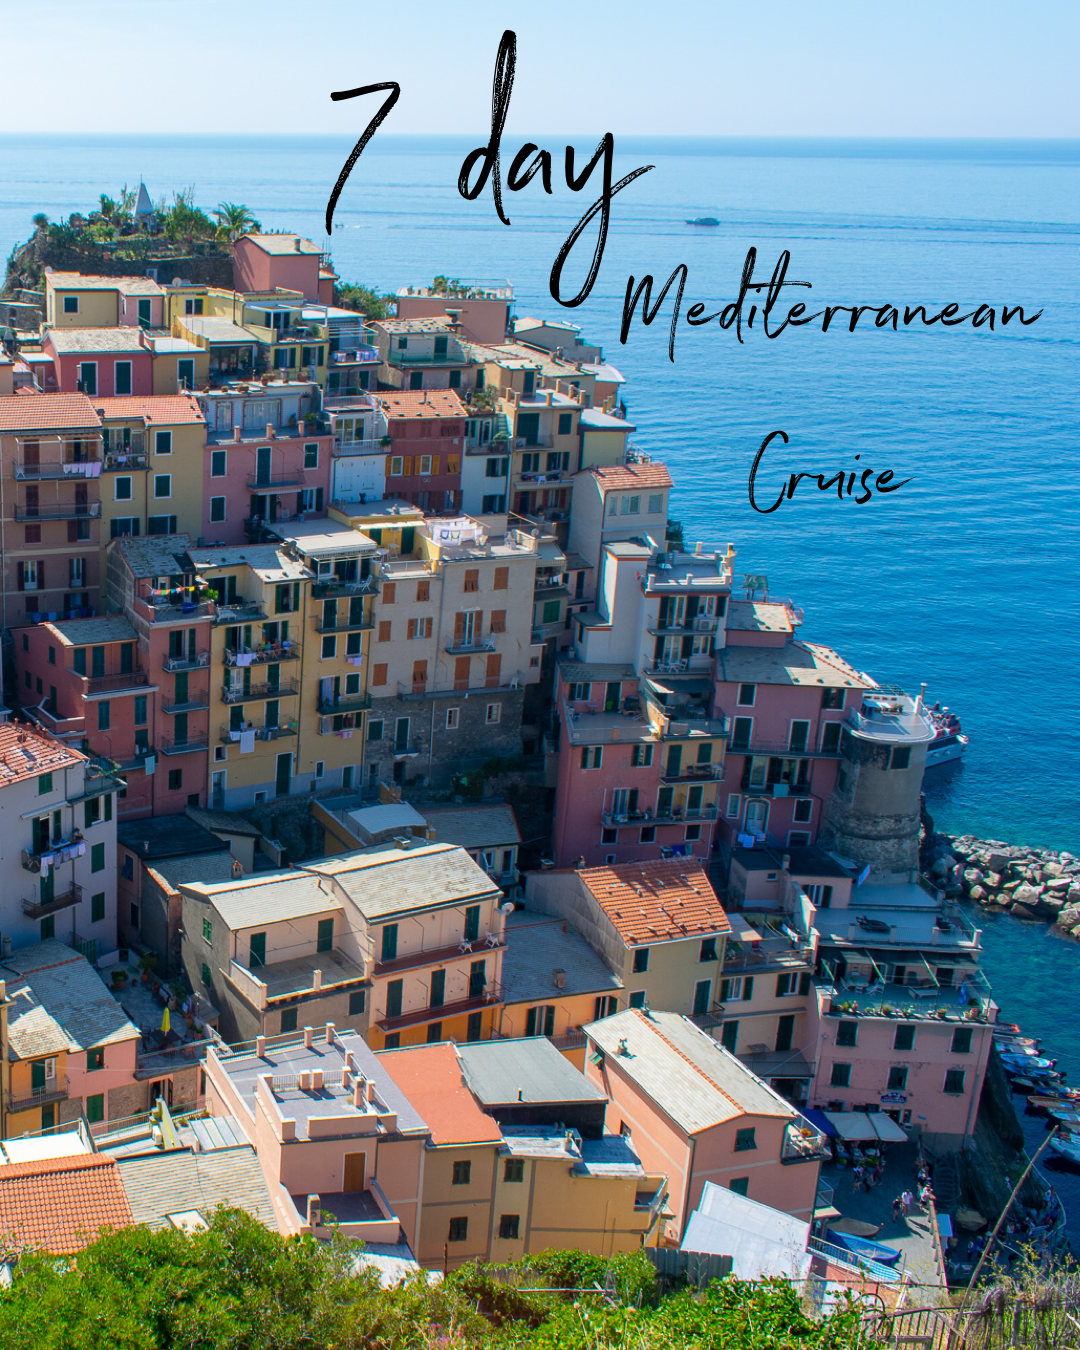 7 day cruise mediterranean